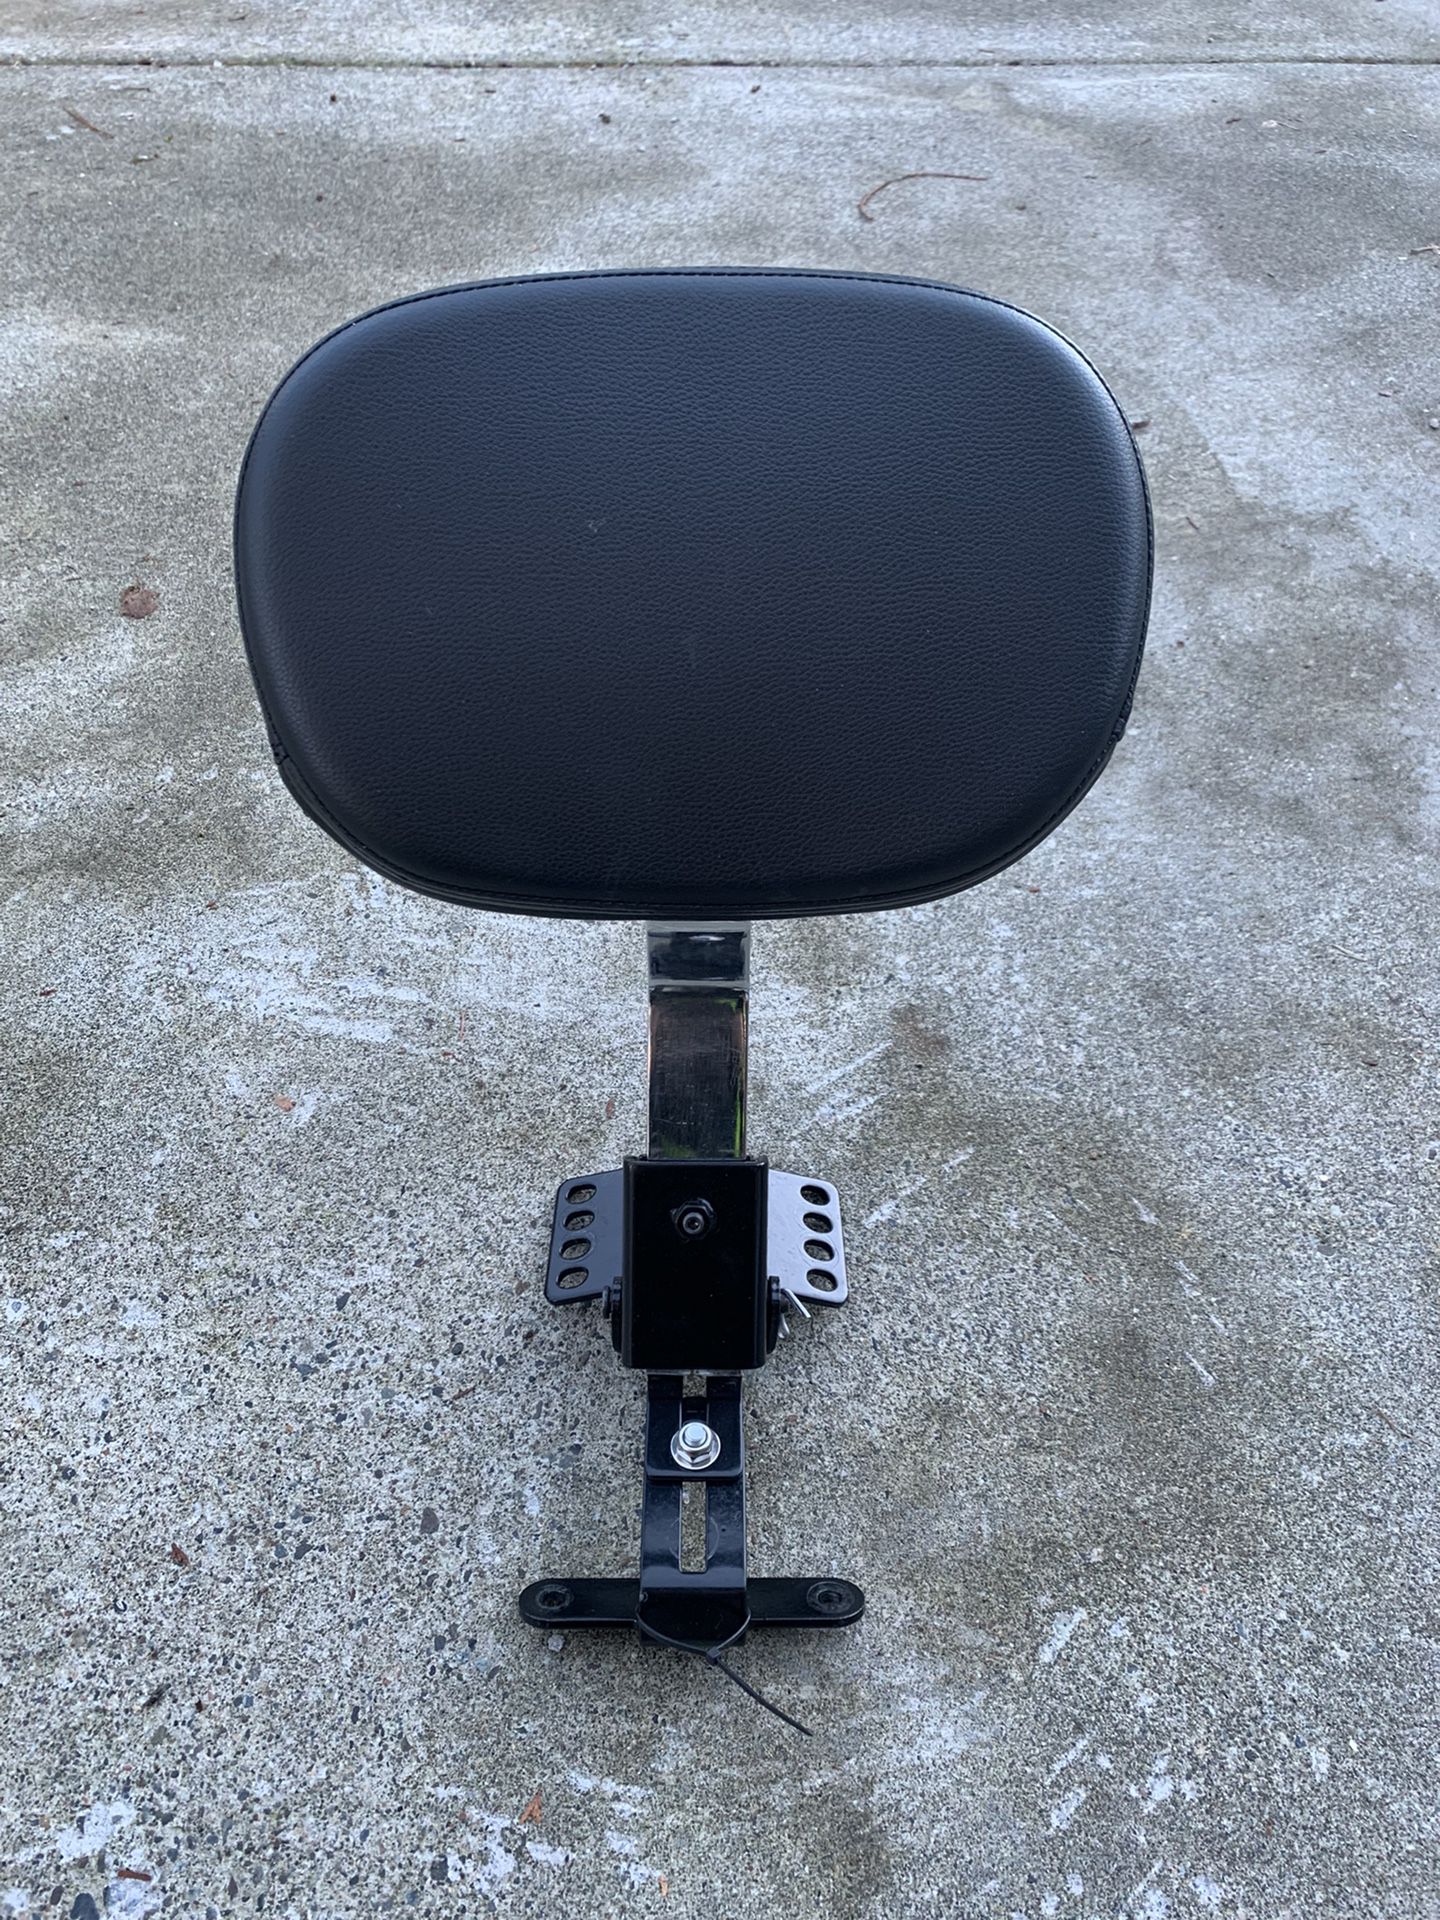 Adjustable Driver Rider Backrest Pad for Harley Road King Street Glide/Road Glide/Electra Glide 97-2020 (Gloss Black).